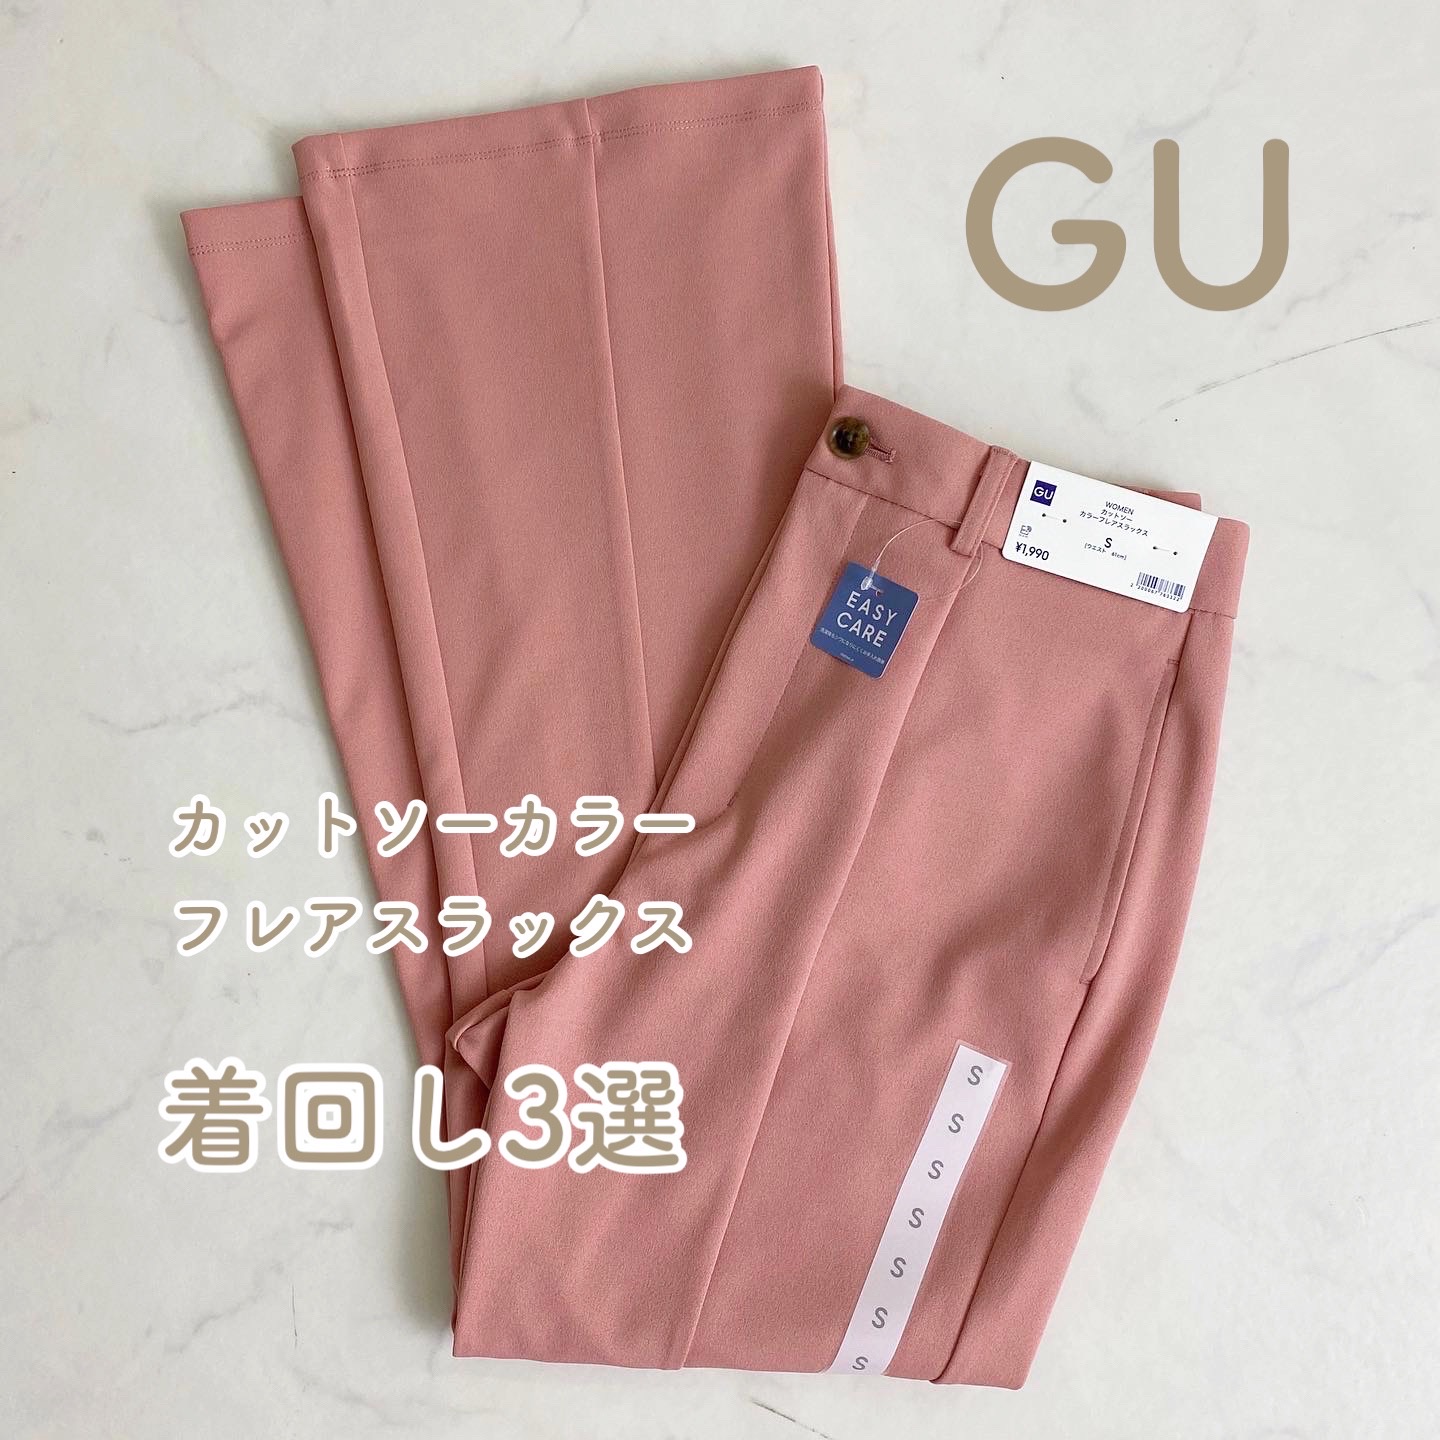 「薄めピンク」が「かわいい」【GU】の”カットソーカラーフレアスラックス”集